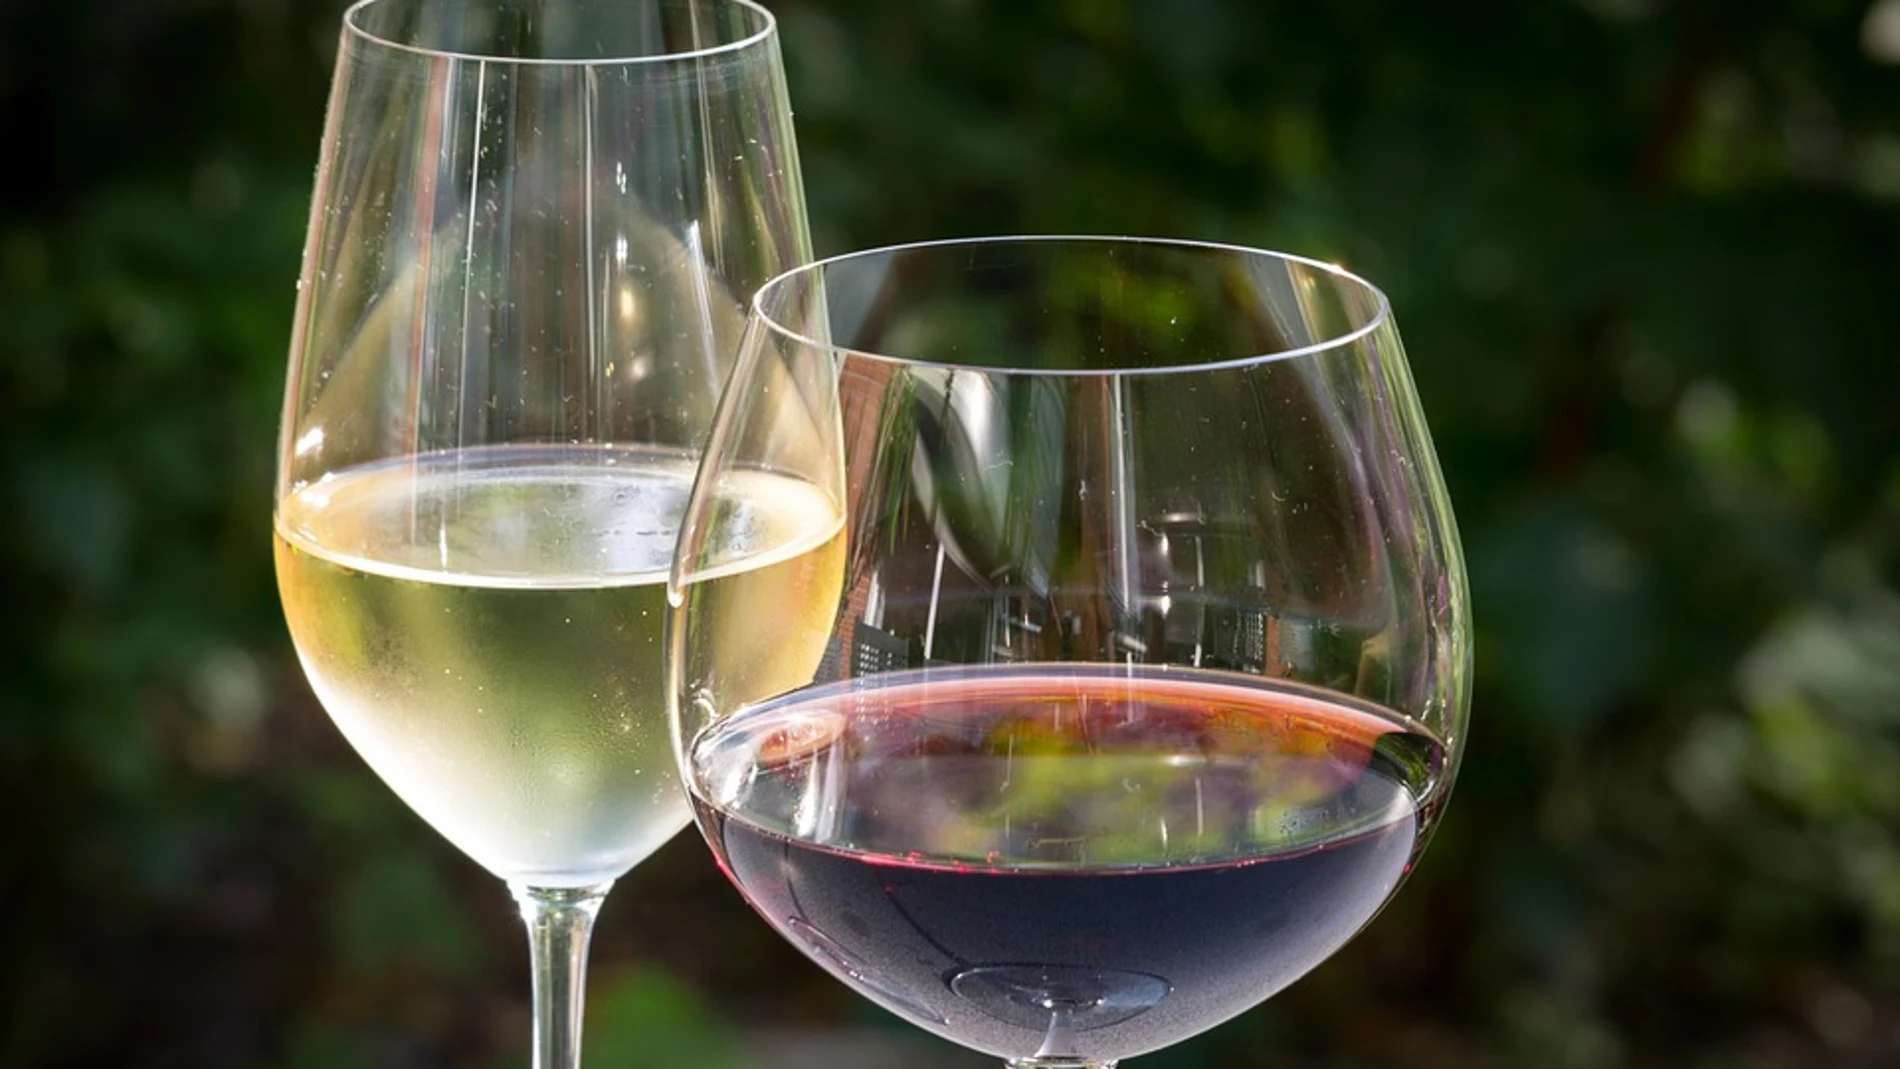 Tipos de copas de vino: el tamaño sí es importante